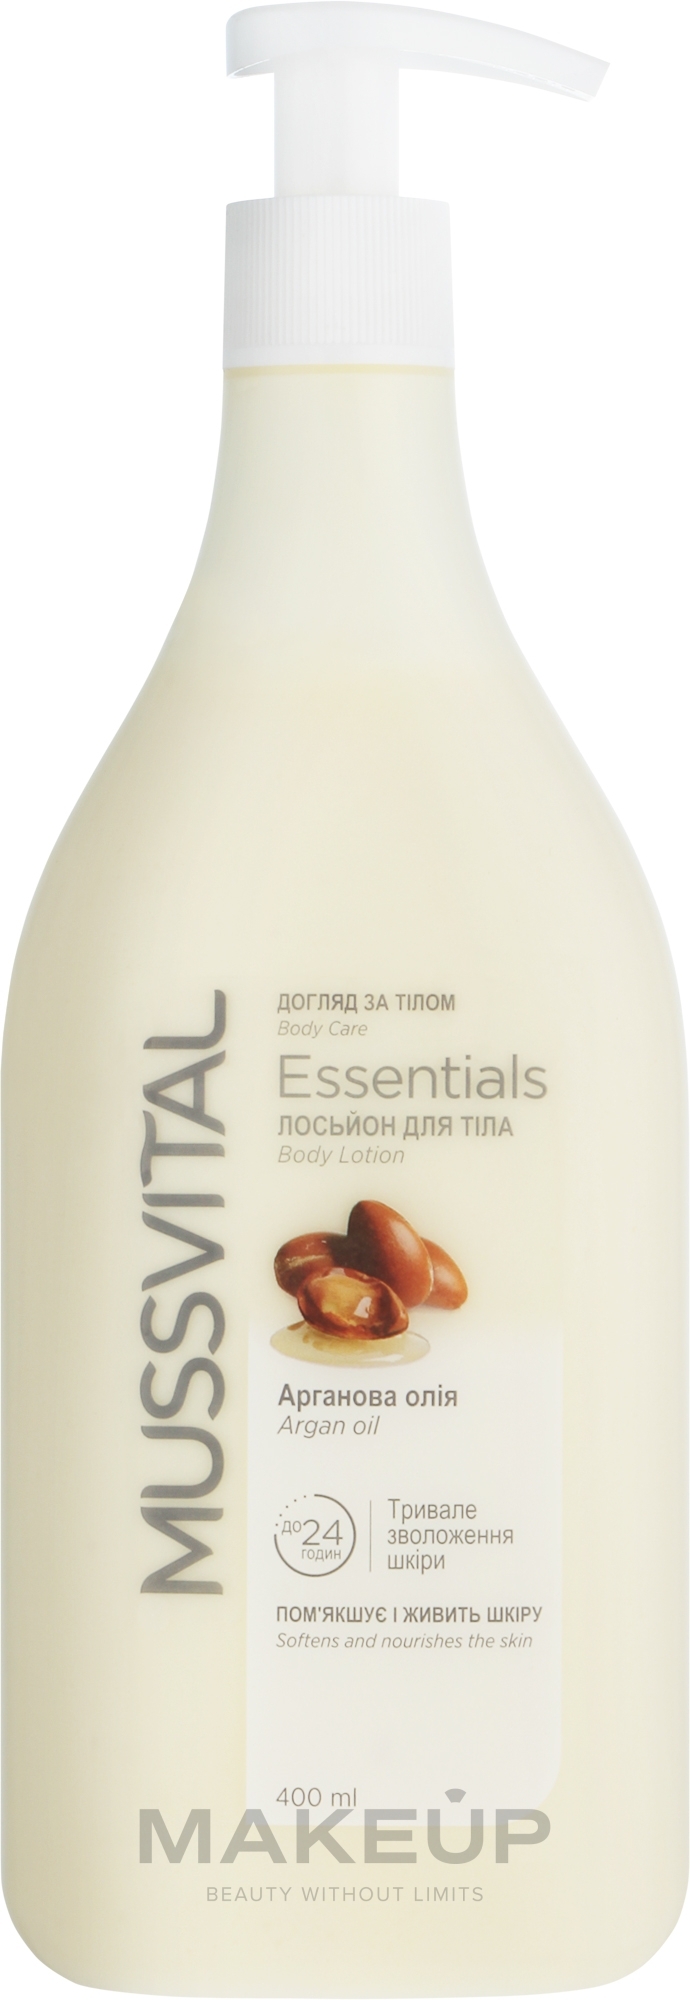 Лосьйон для тіла з аргановим маслом - Mussvital Essentials Argan Oil Body Lotion — фото 400ml